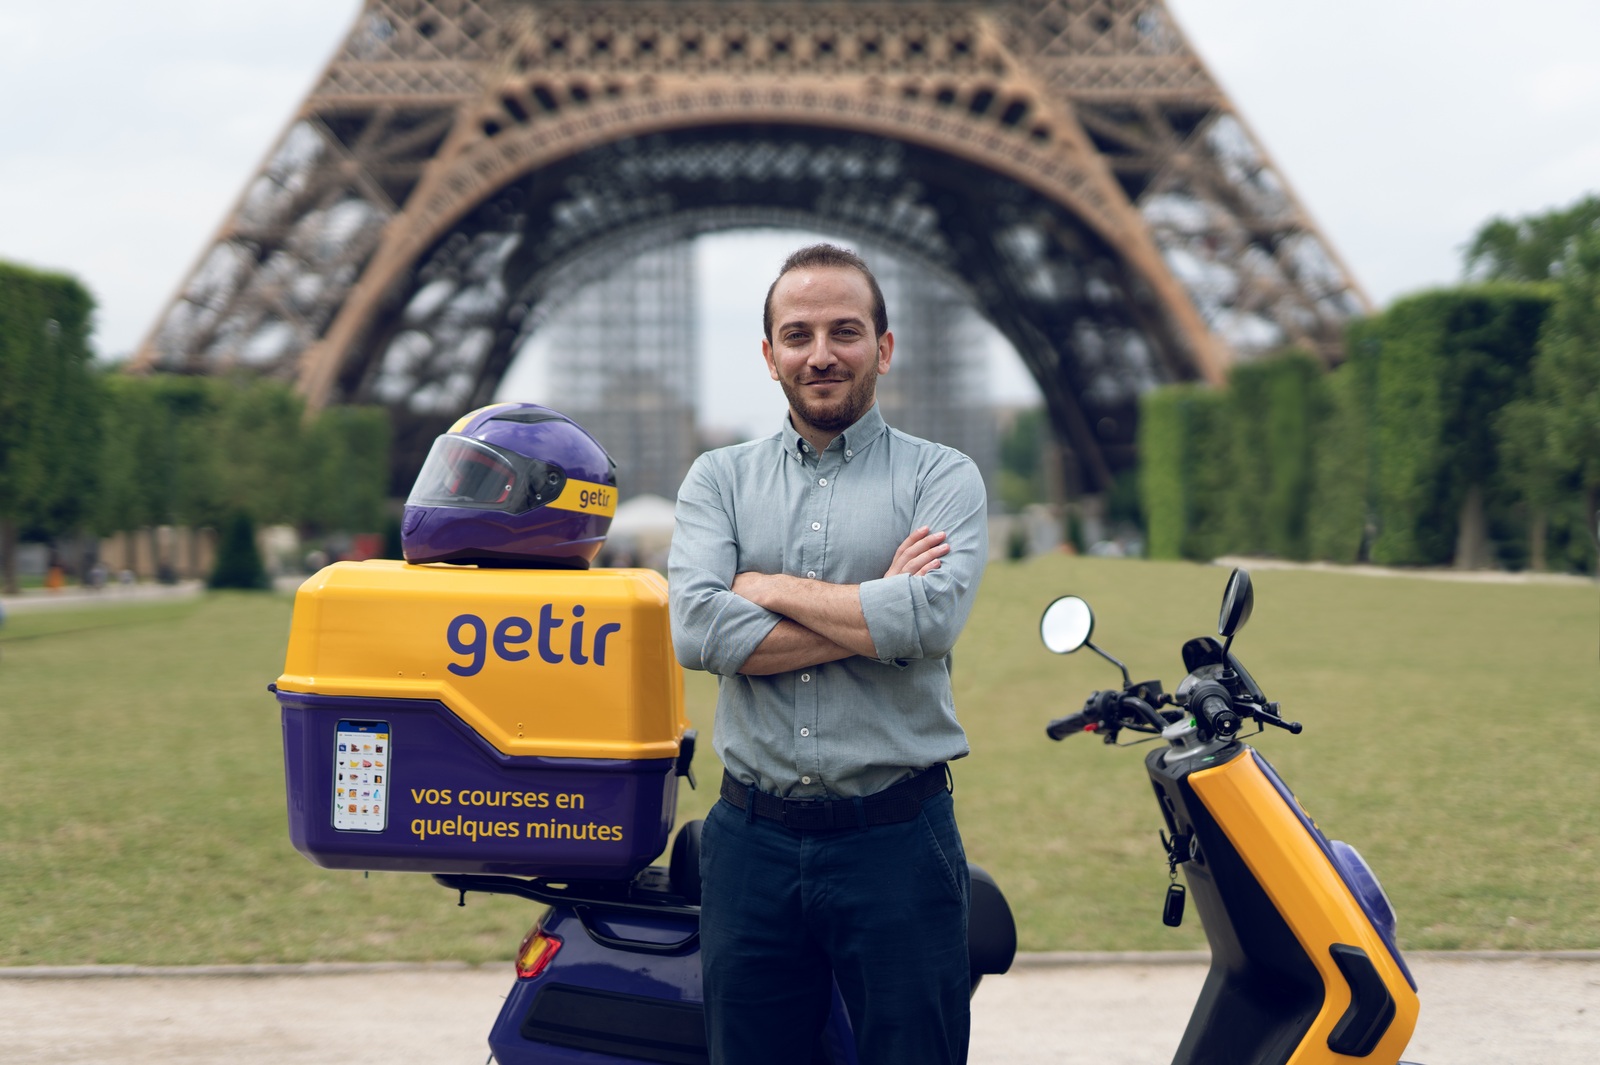 Getir, spécialiste de la livraison ultrarapide, s'installe à Lyon et poursuit son expansion